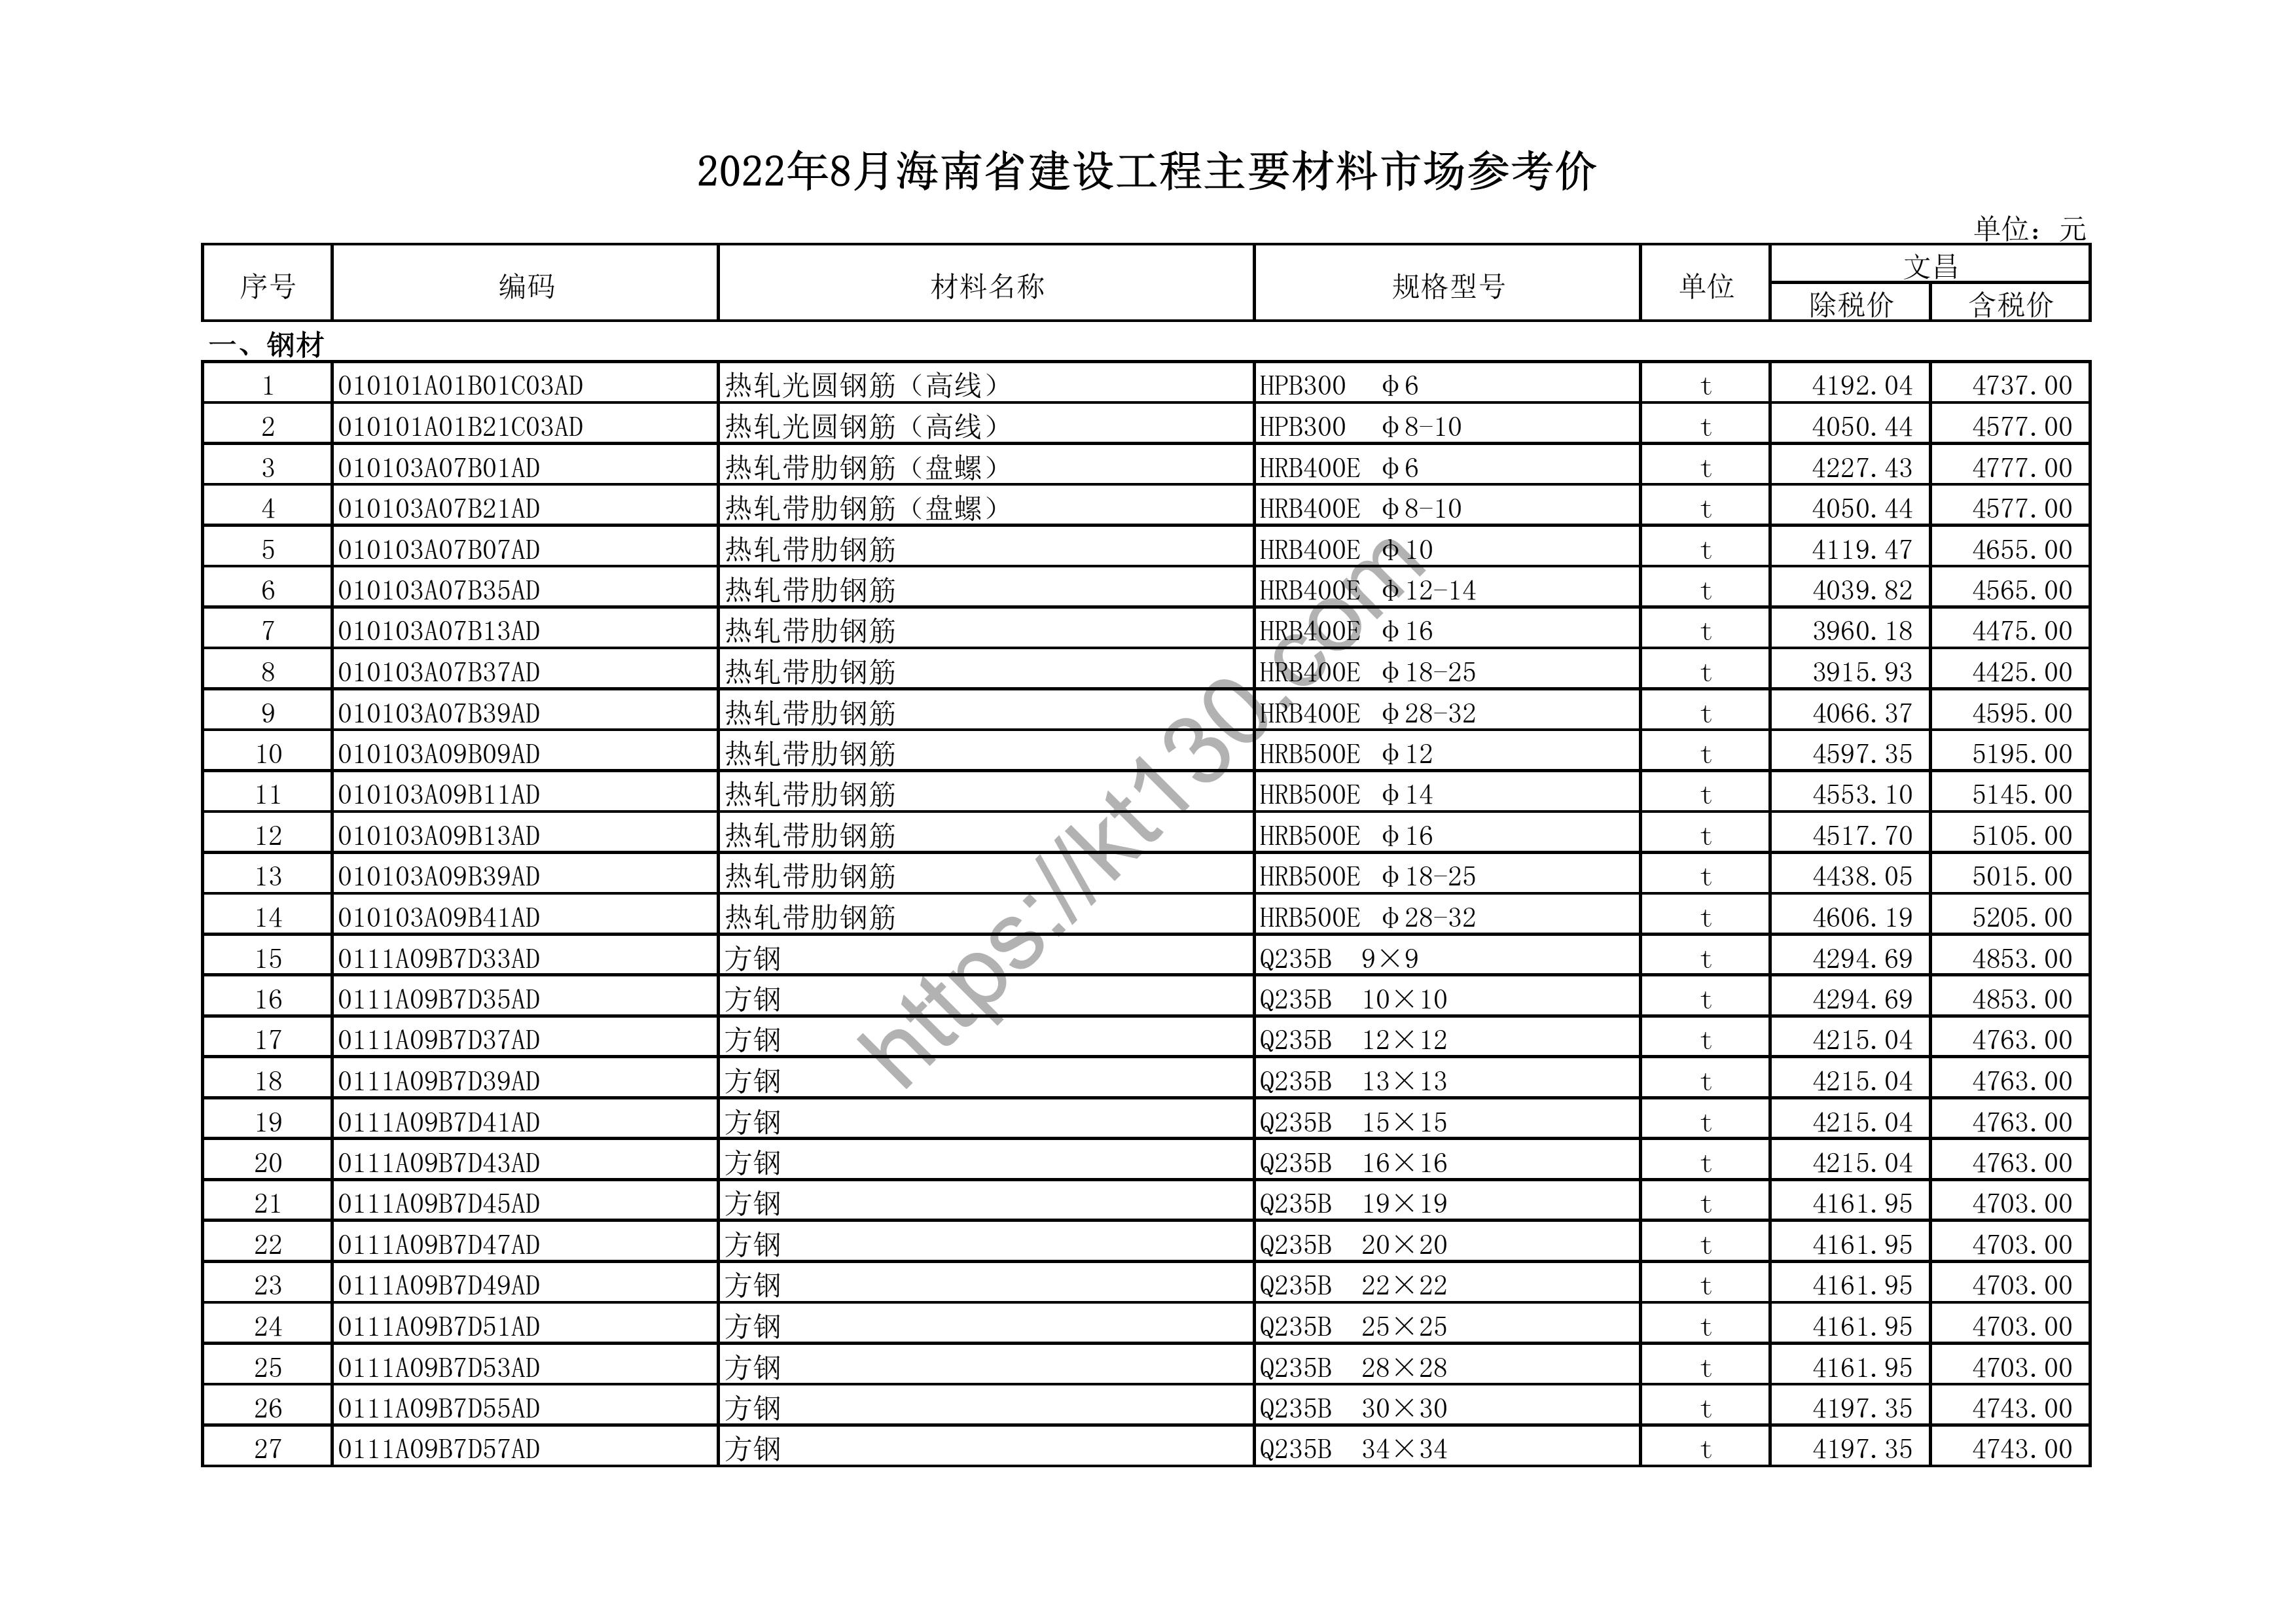 海南省2022年8月建筑材料价_平板白玻璃_44615